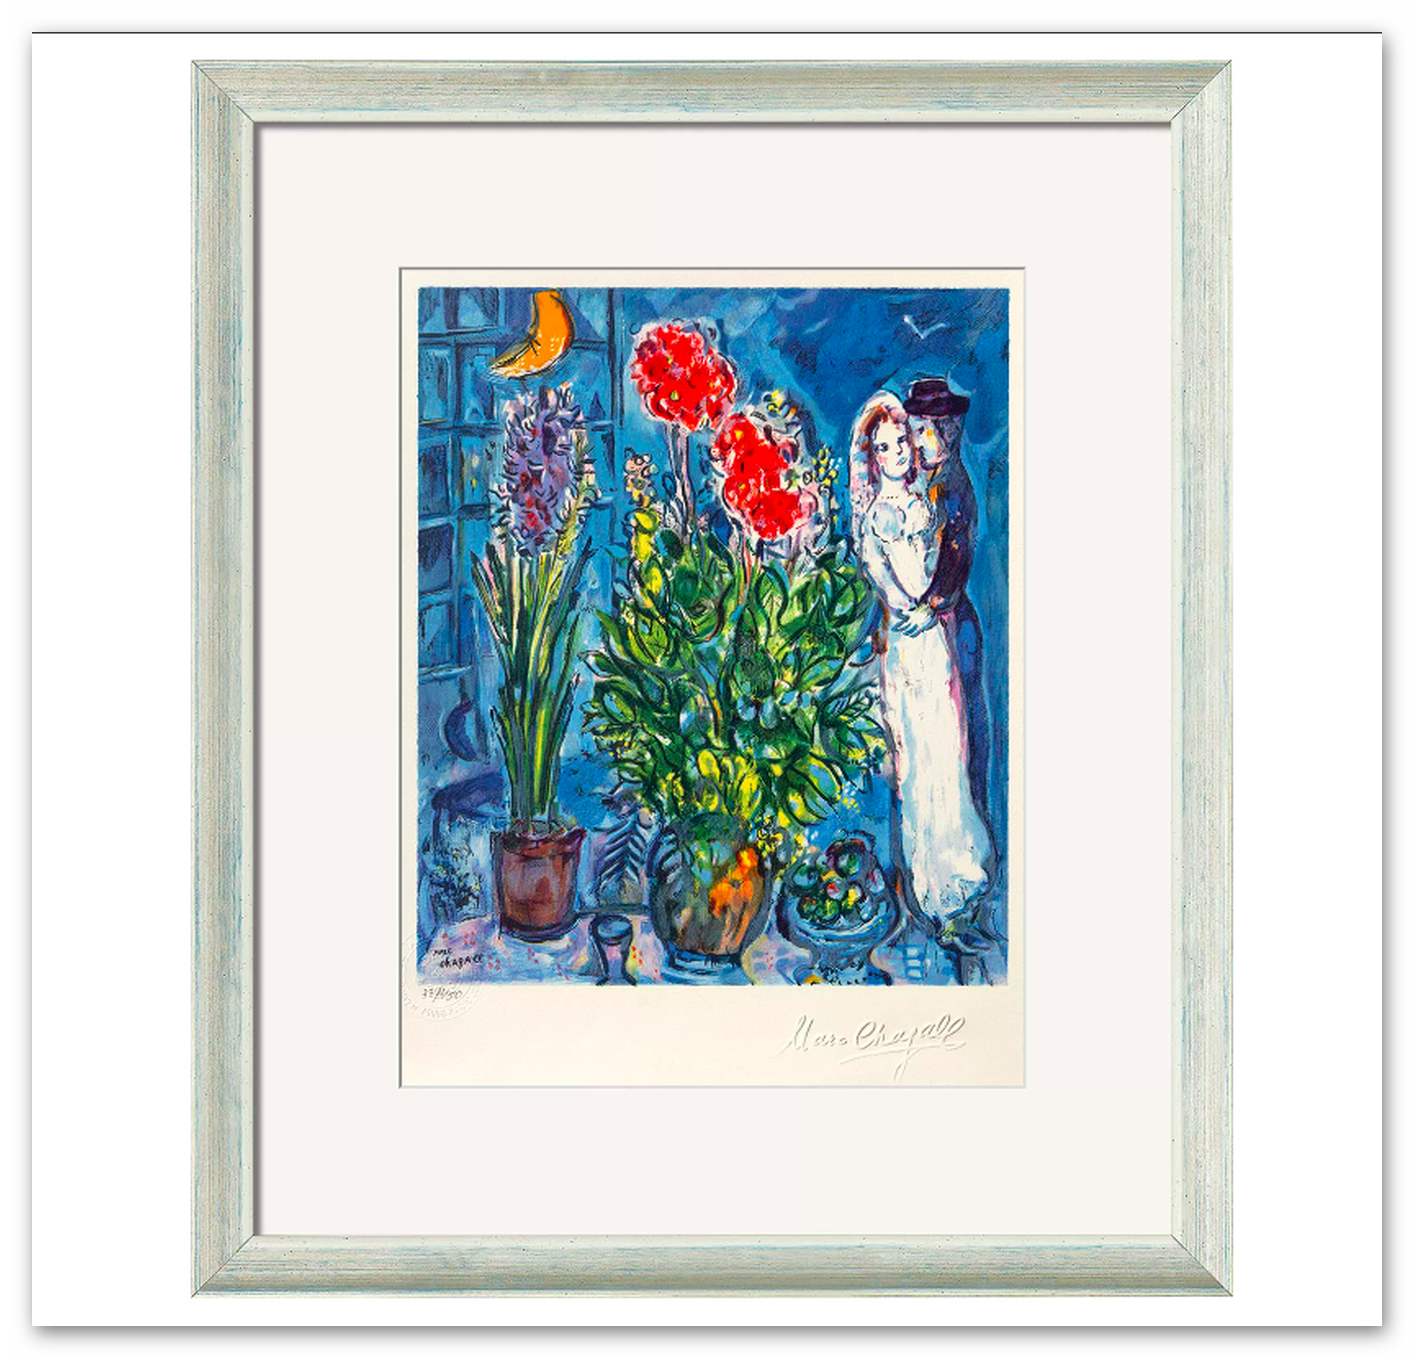 Farblithografie "Les Mariés" von Marc Chagall